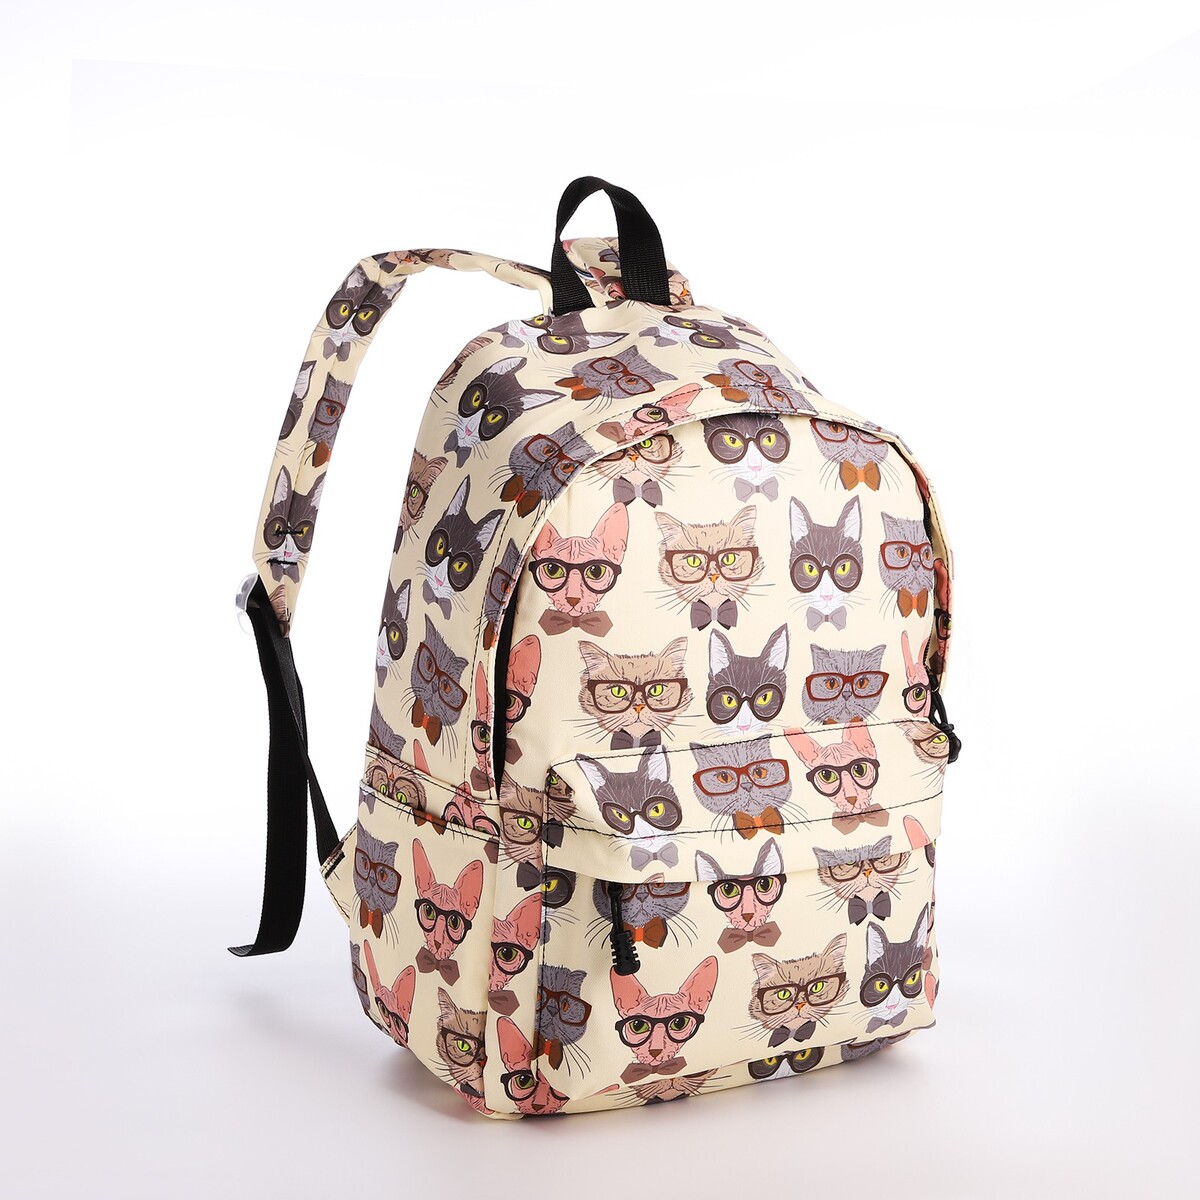 Рюкзак школьный из текстиля на молнии, 4 кармана, кошелек, цвет бежевый рюкзак на молнии 3 наружных кармана бежевый